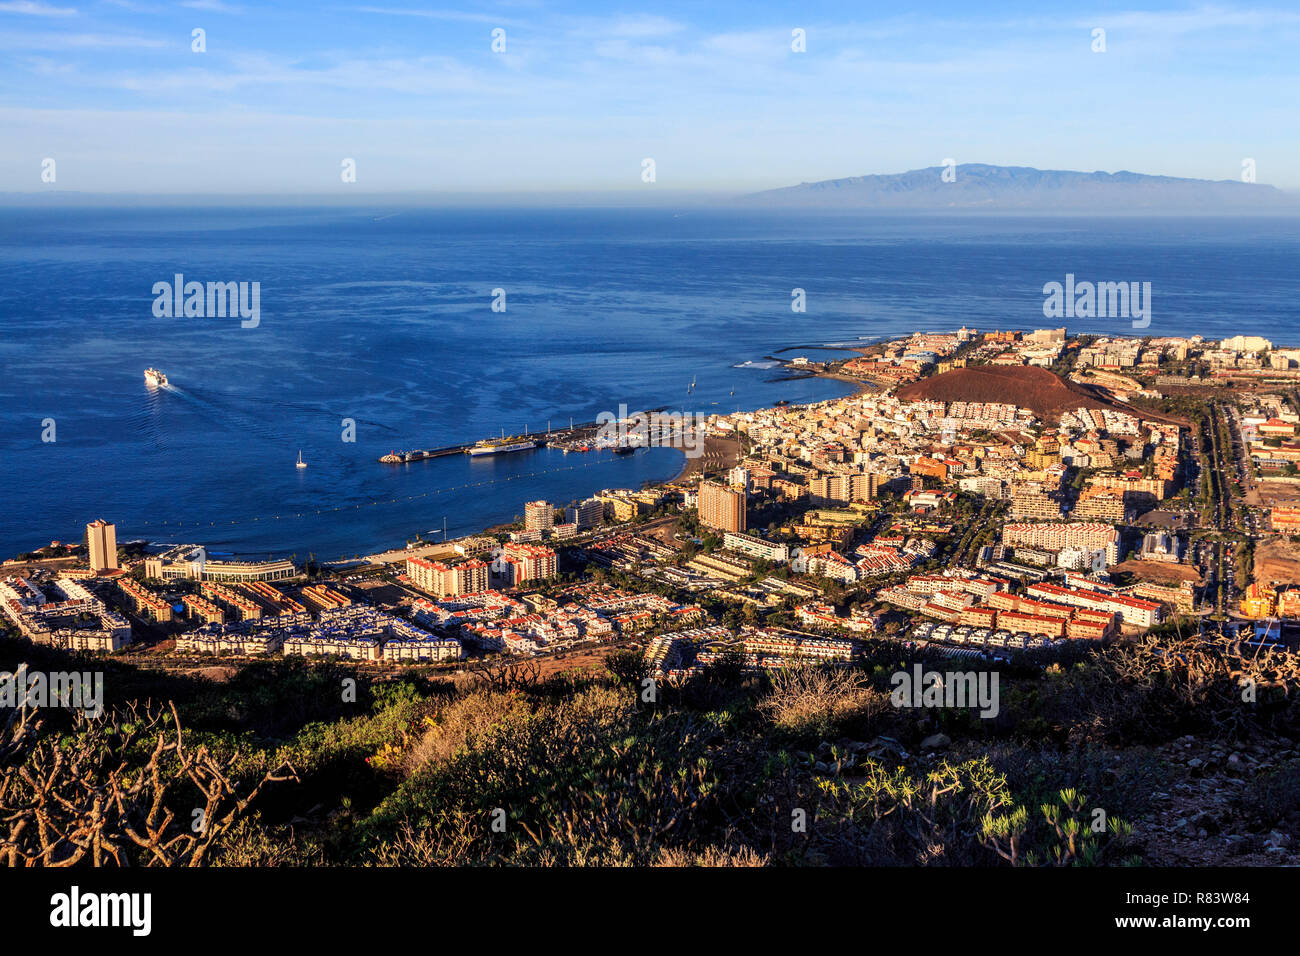 Los Cristianos , Playa de las Americas, Tenerife, Canary Island, une île espagnole, l'Espagne, au large de la côte nord de l'Afrique de l'ouest. Banque D'Images